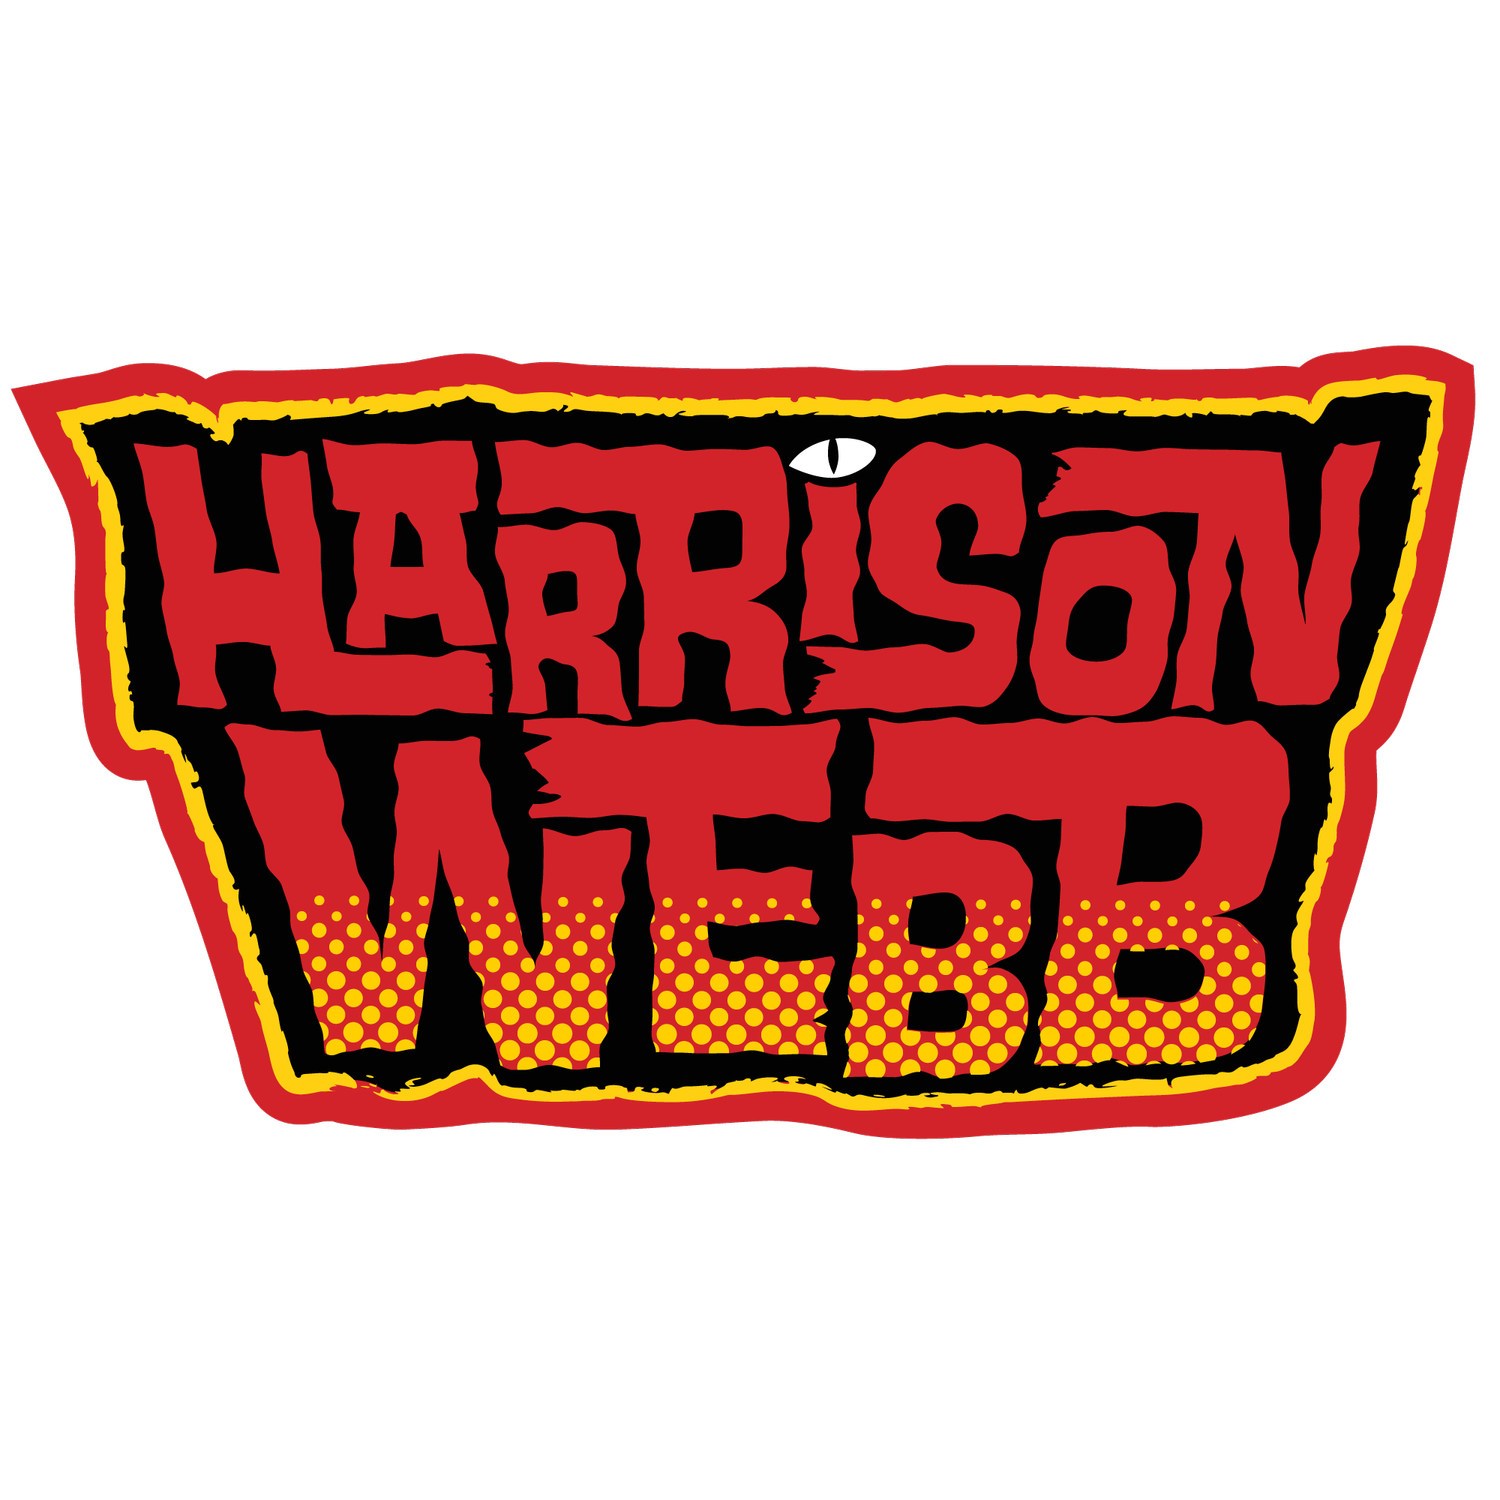 Harrison Webb Art